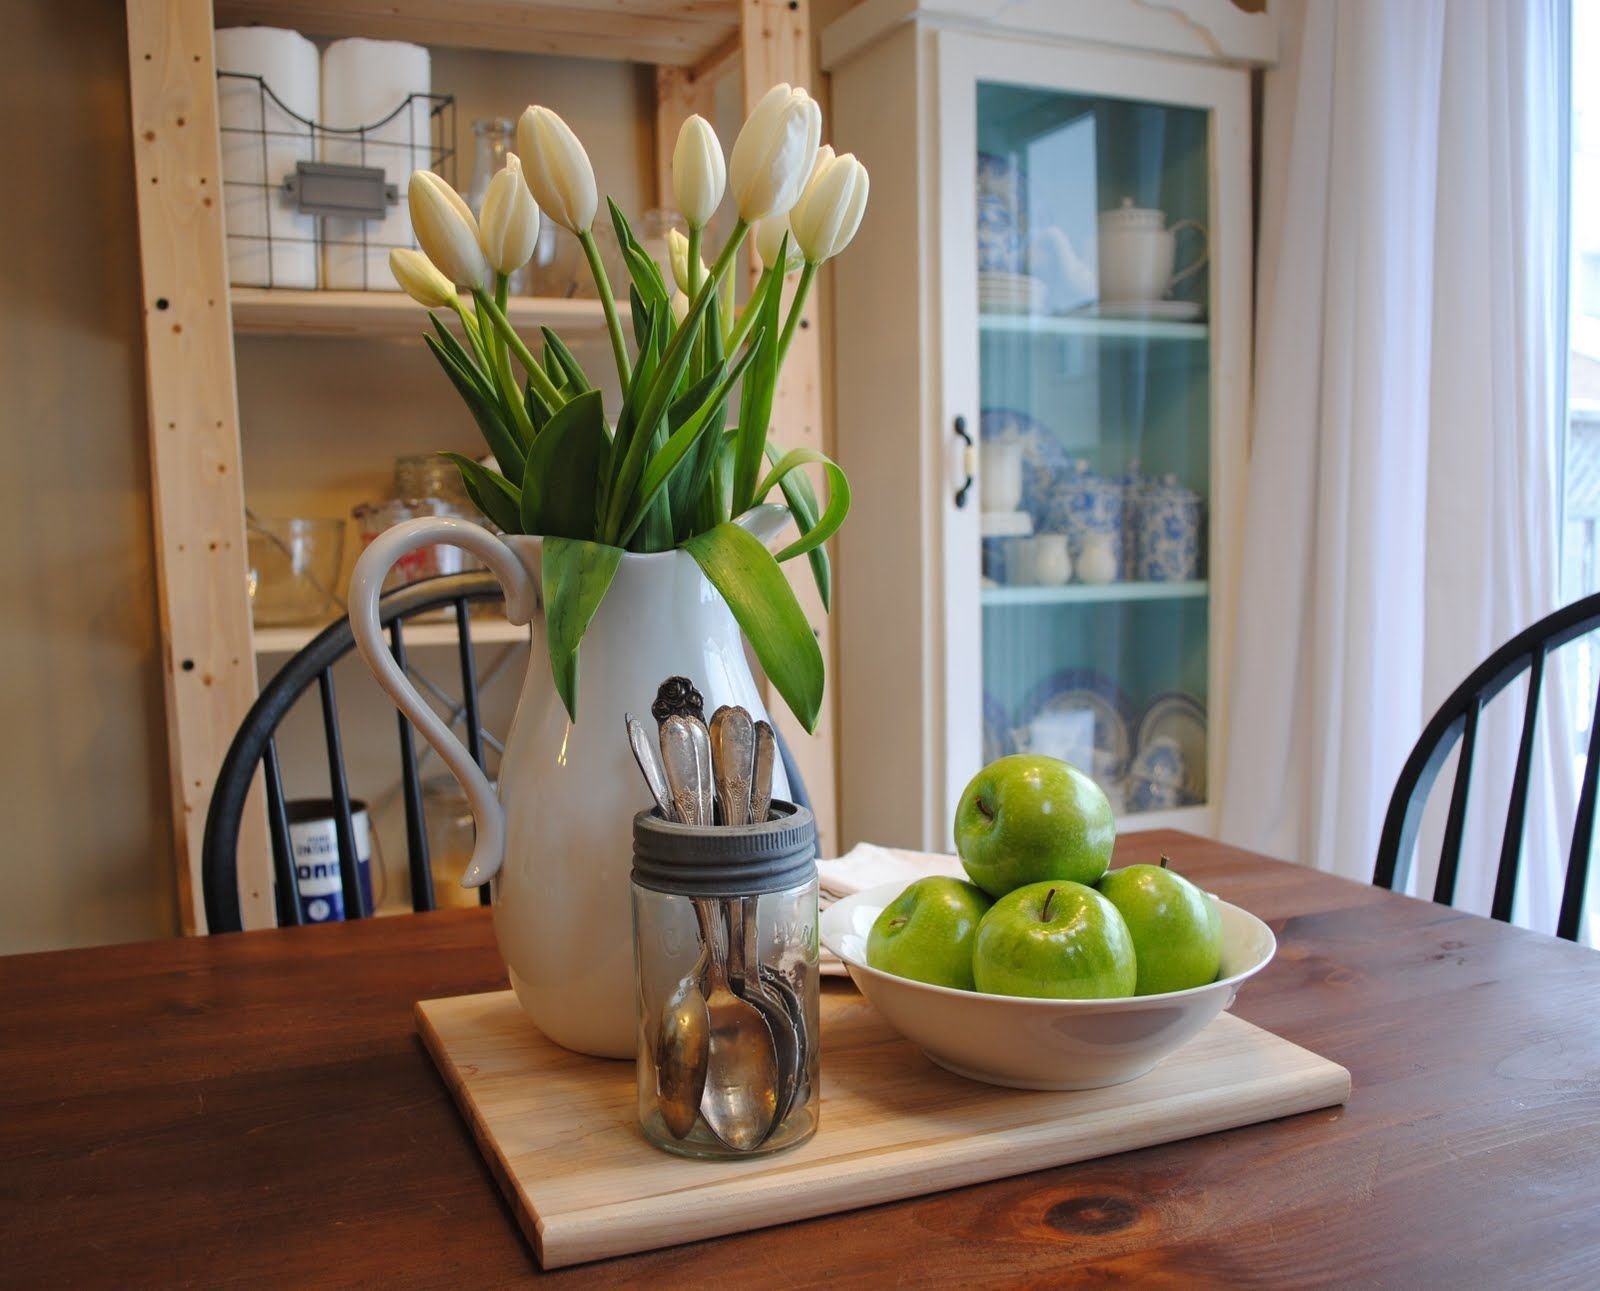 Фото тюльпаны в вазе на столе. Тюльпаны Villeroy Boch. Тюльпаны в интерьере кухни. Цветы на кухонном столе. Искусственные цветы в интерьере кухни.